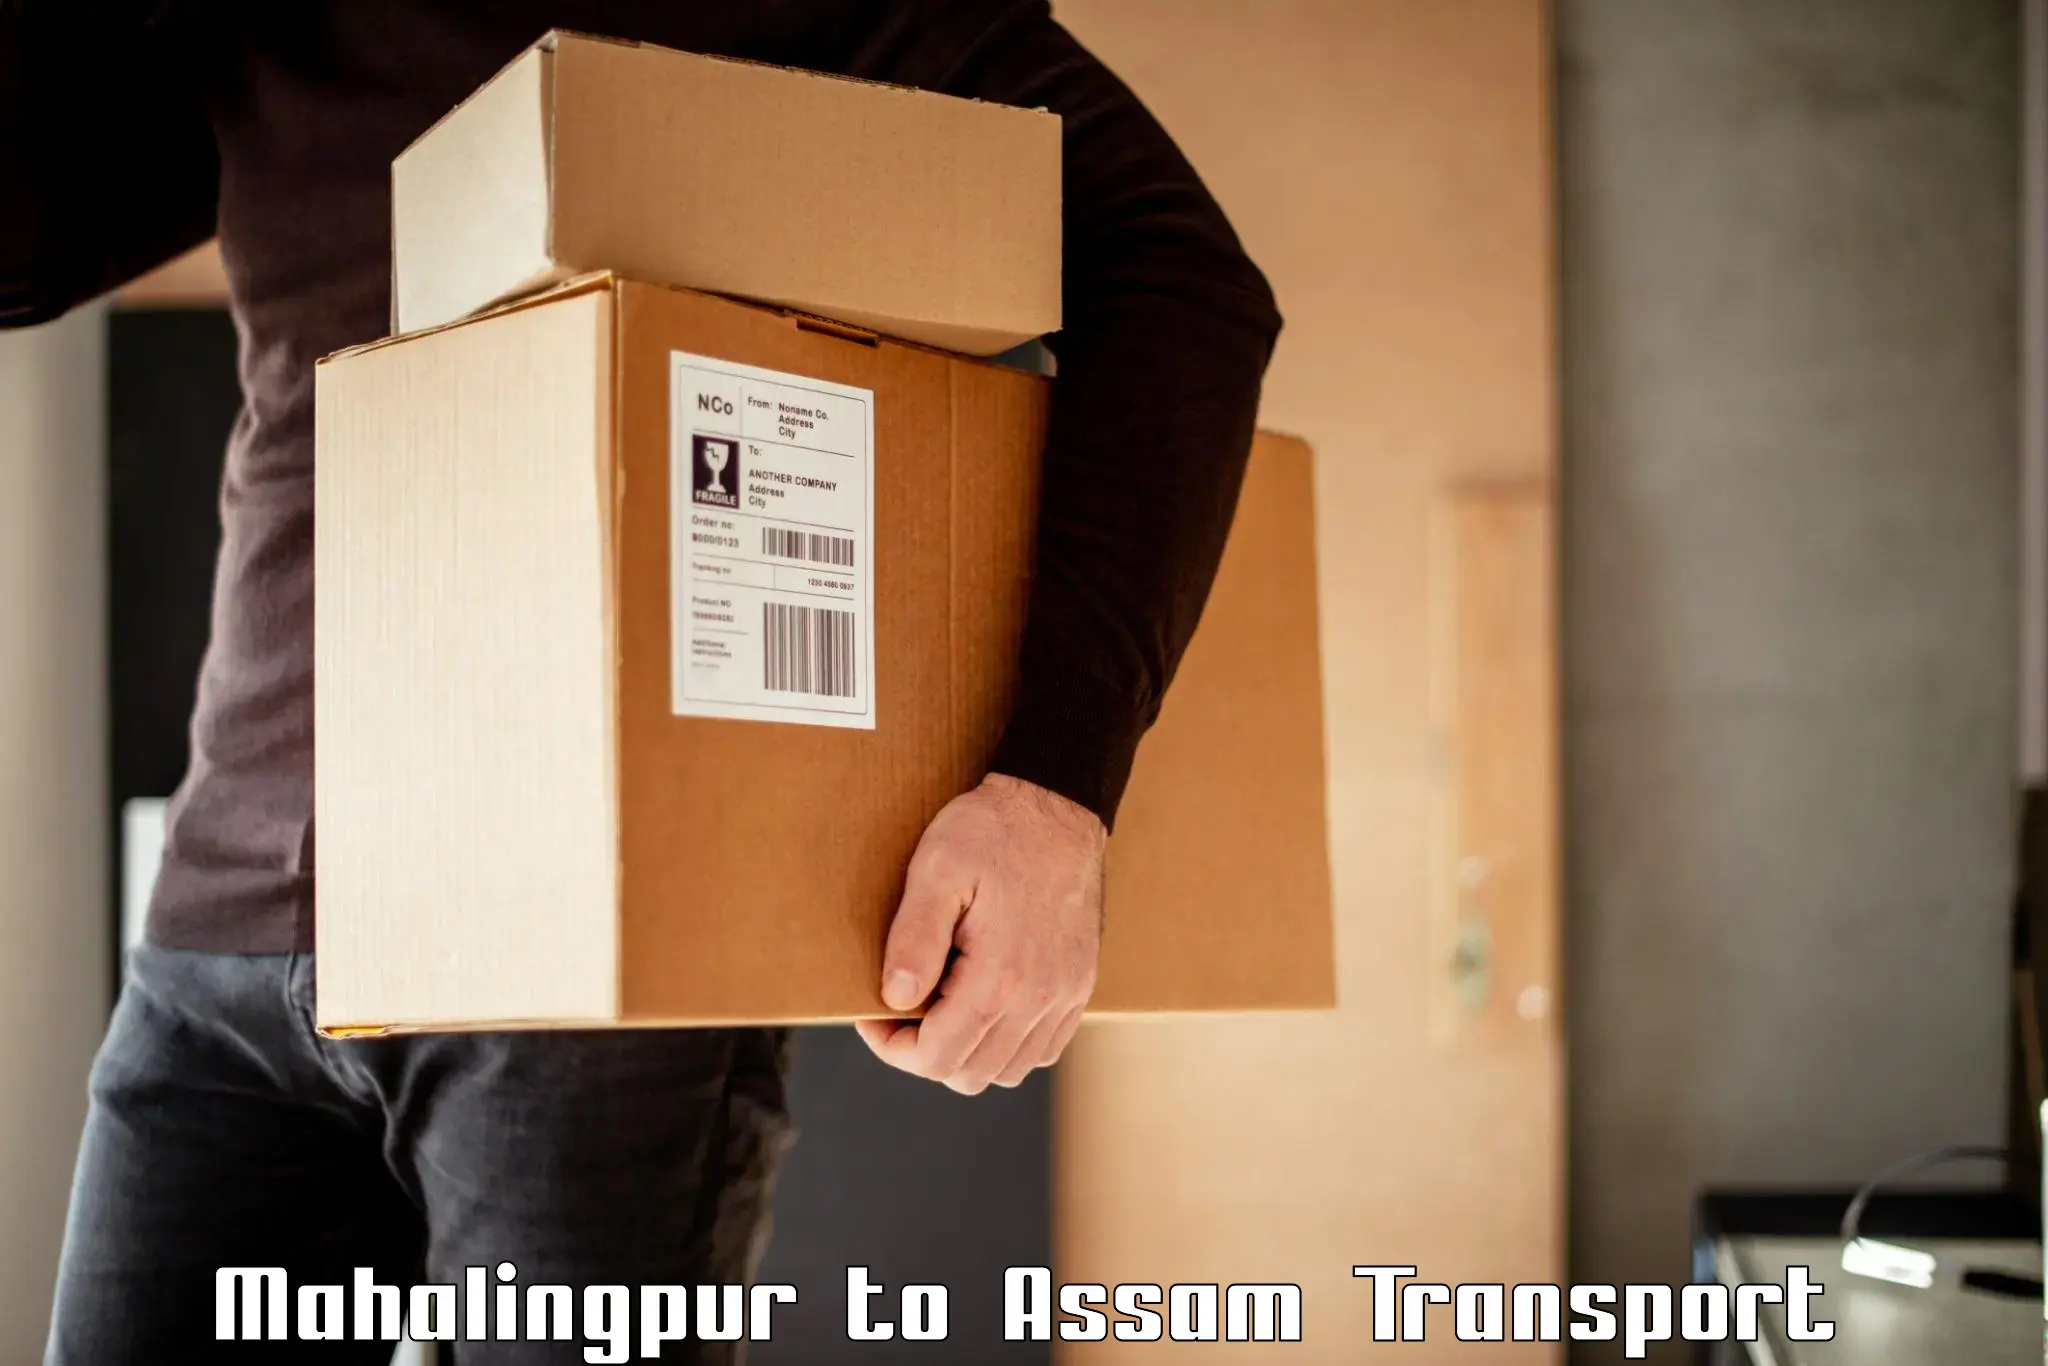 Cargo transport services Mahalingpur to Digboi